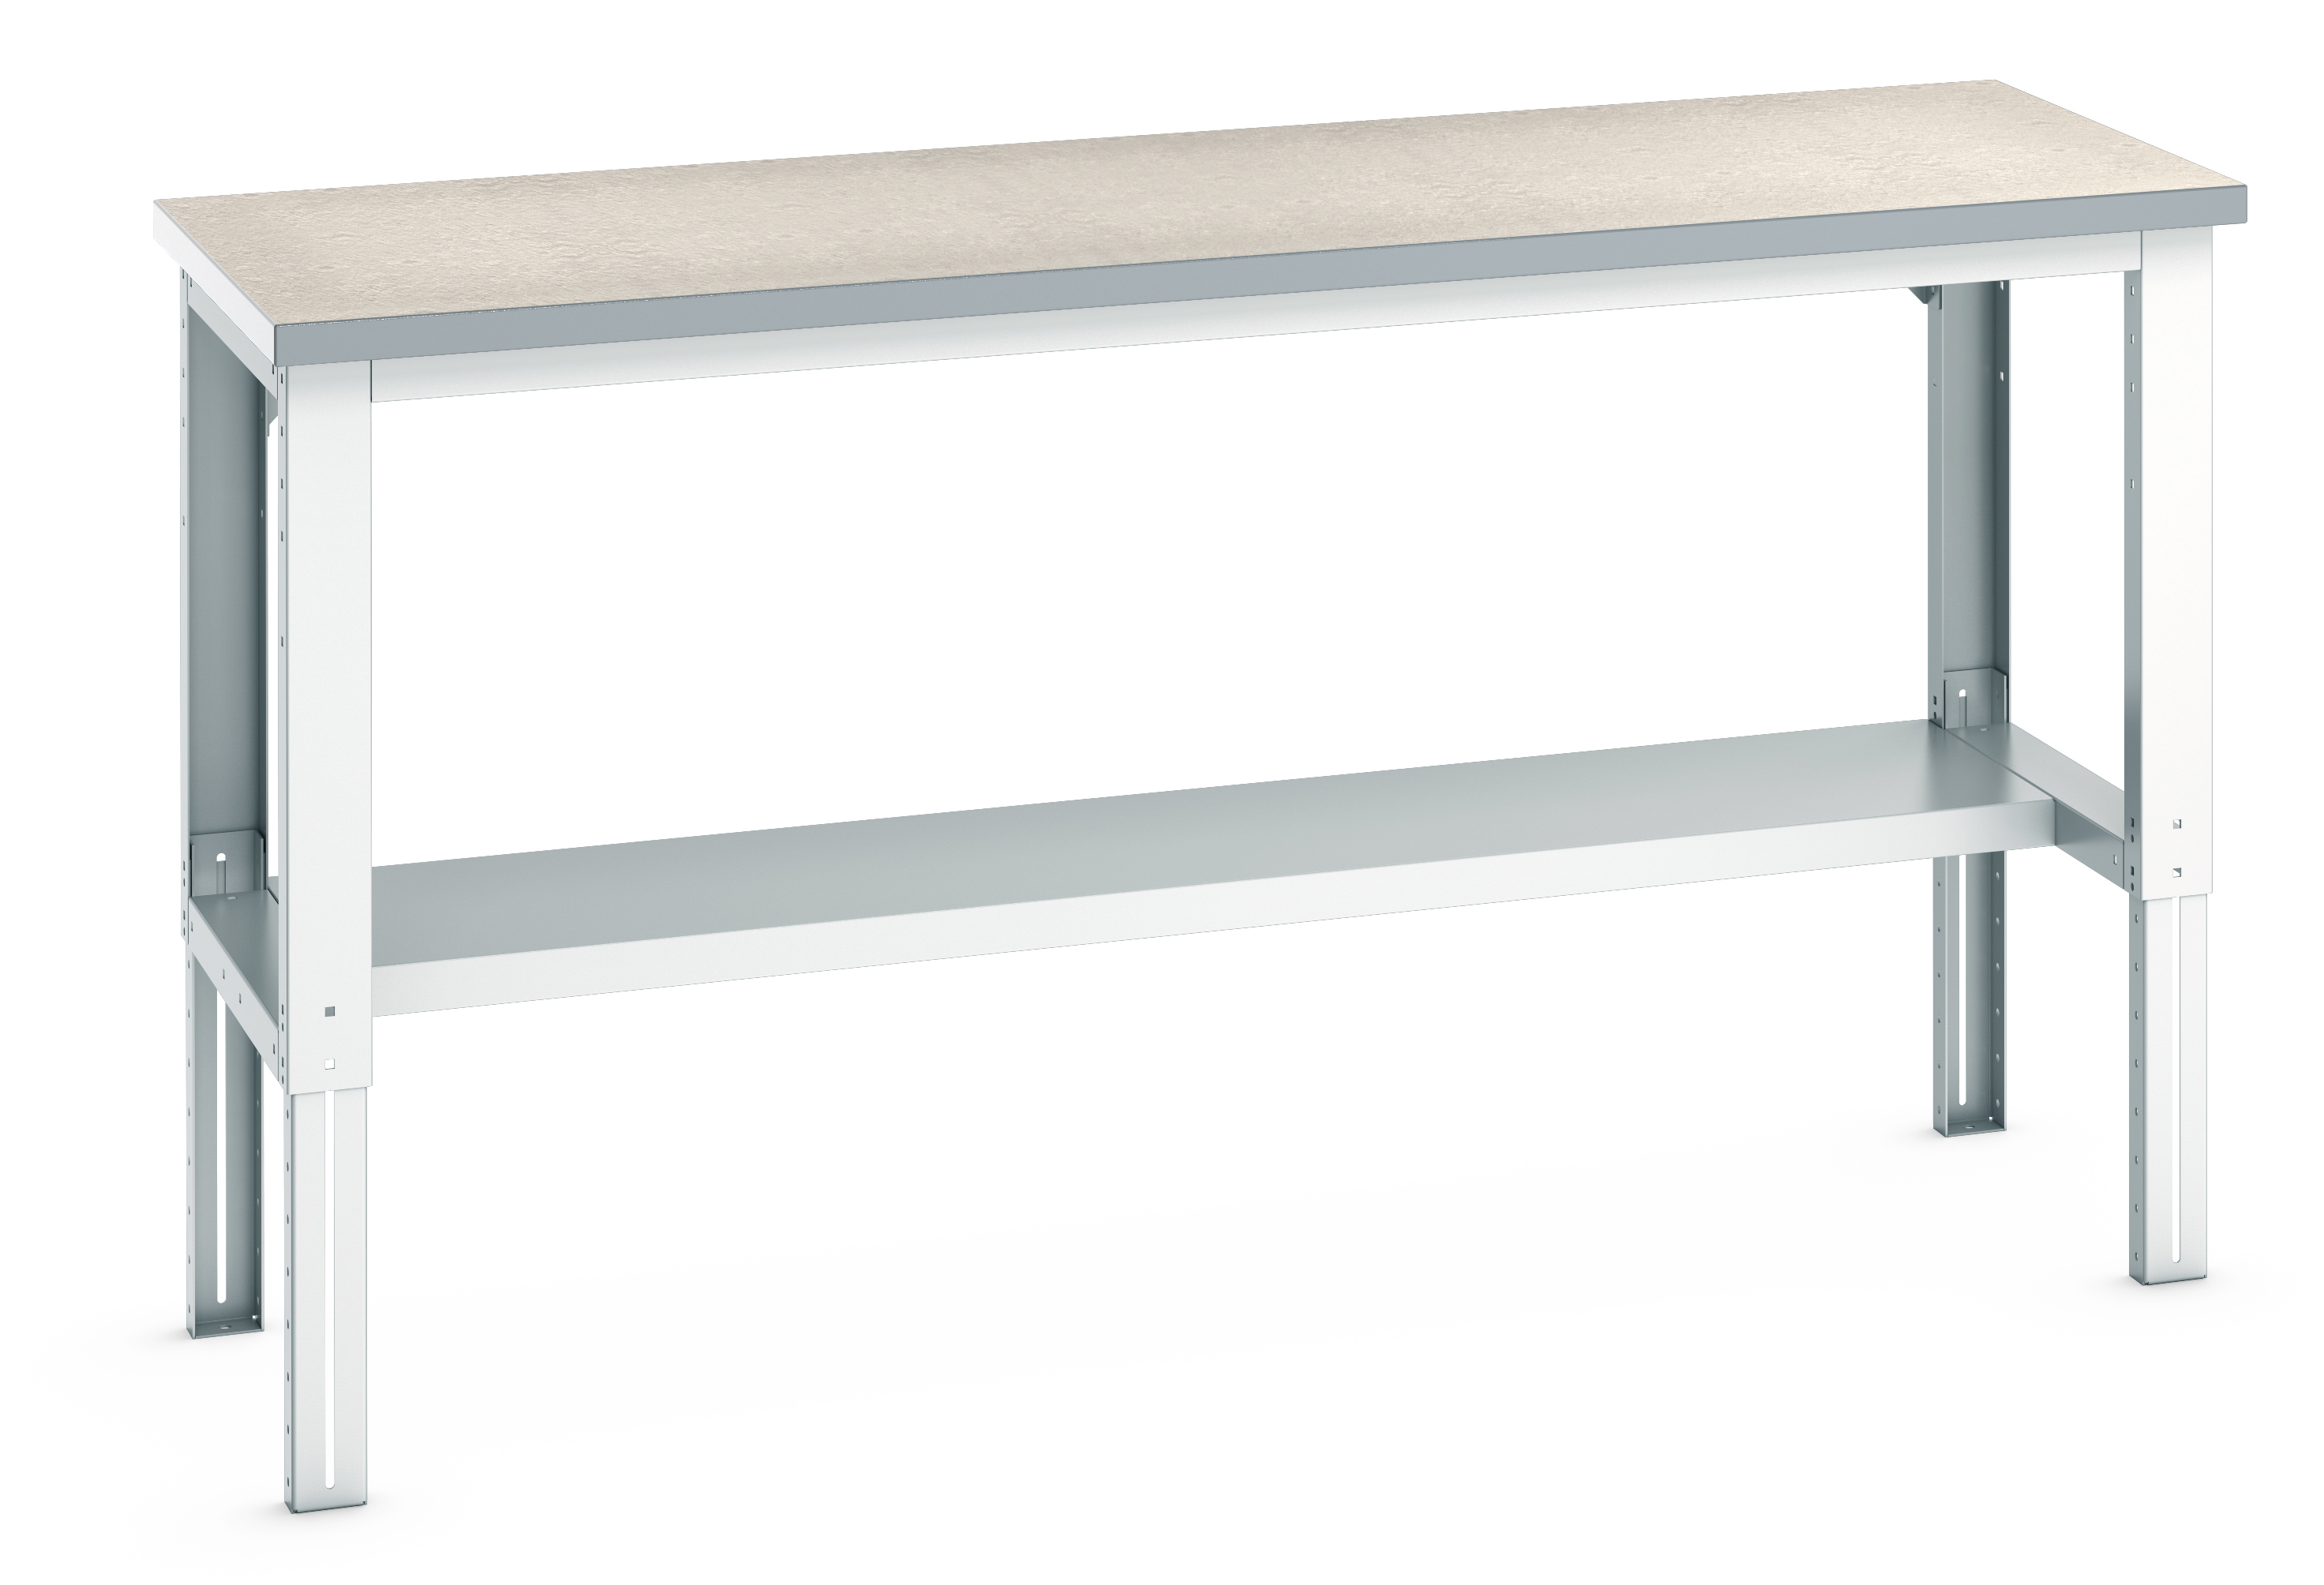 Bott Cubio Adjustable Height Framework Bench With Half Depth Base Shelf - 41003219.16V